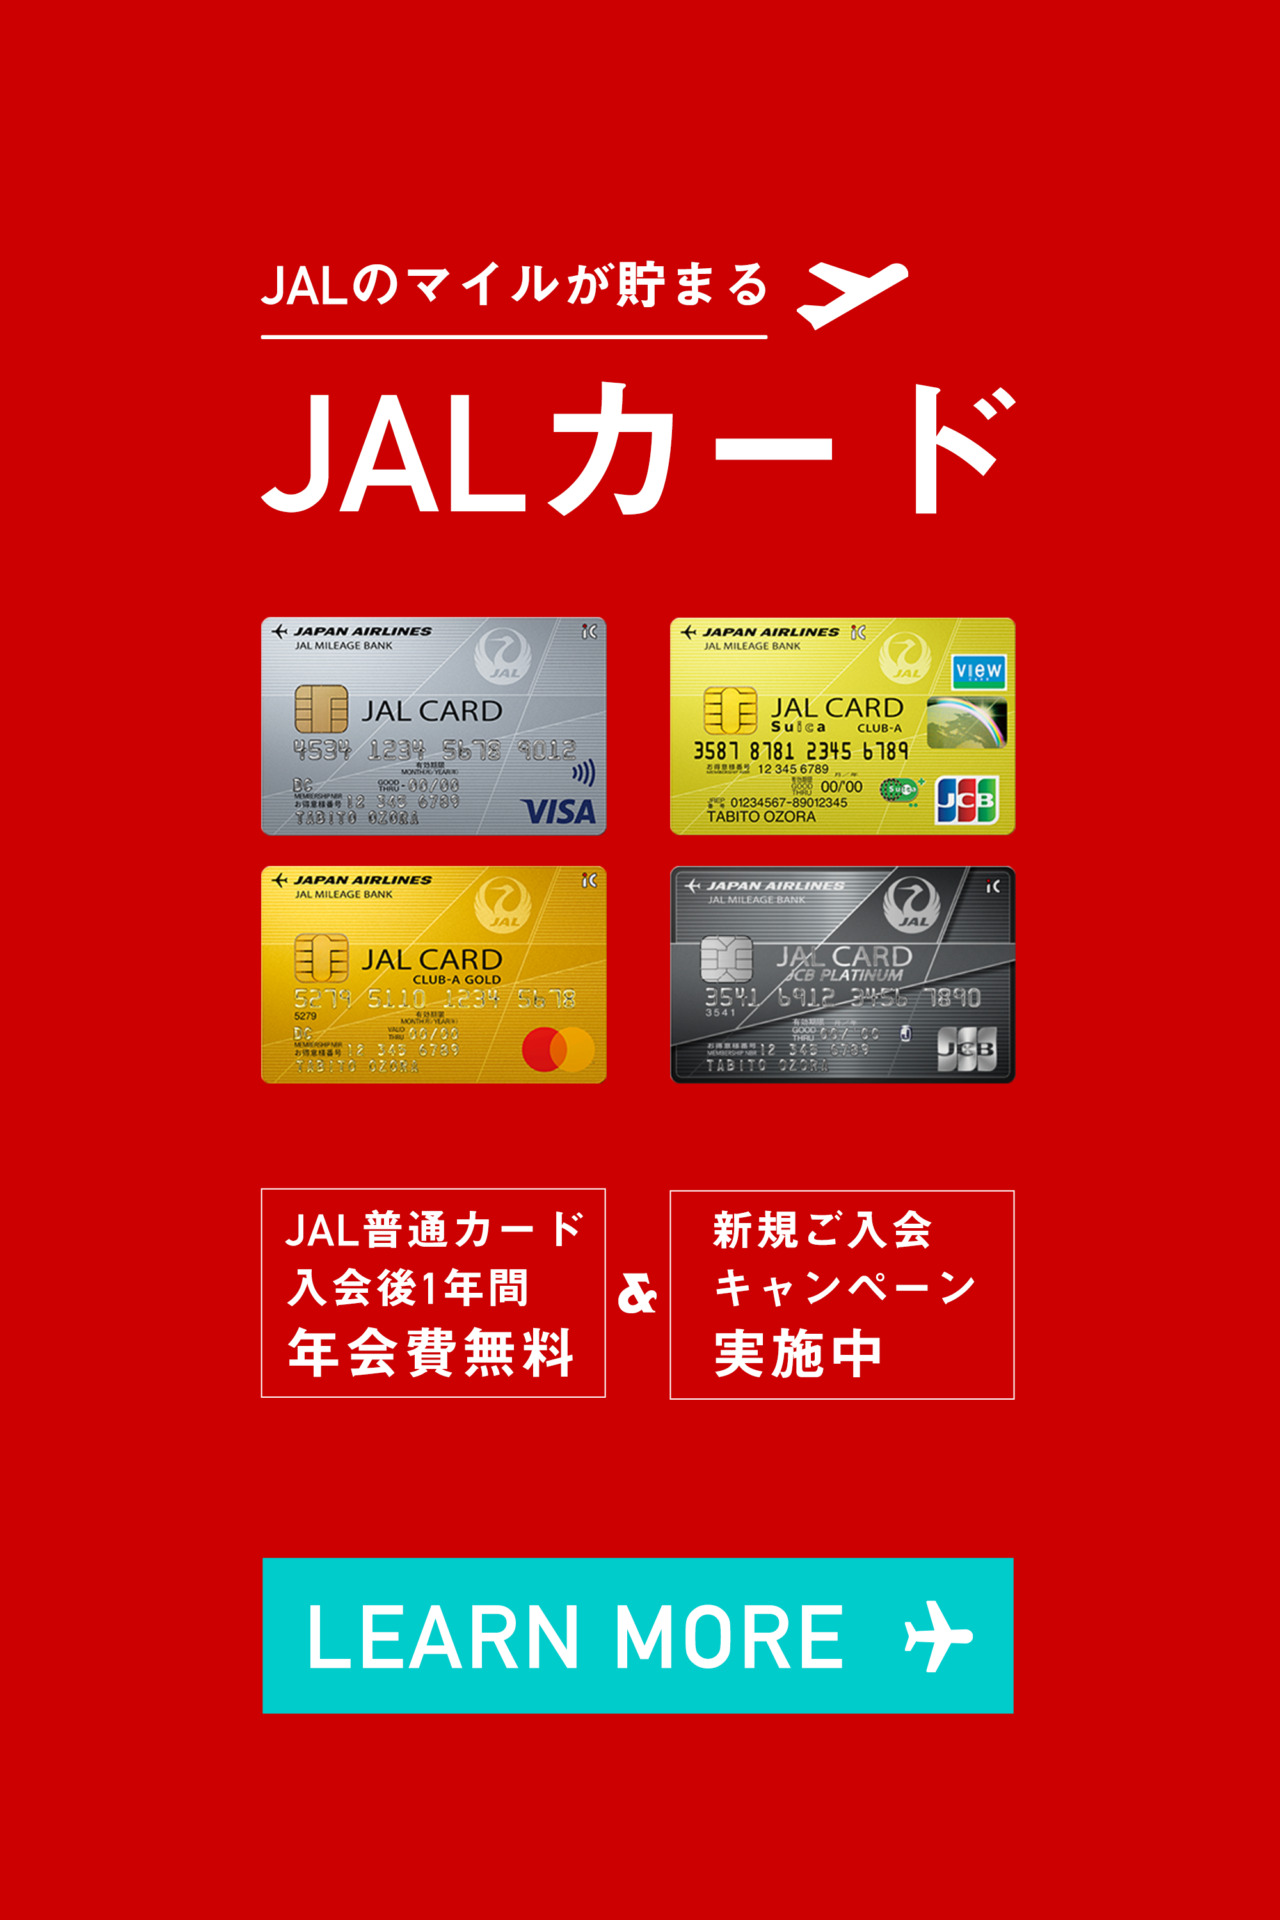 JALマイルが貯まるクレジットカード「JALカード」の年会費比較と選び方